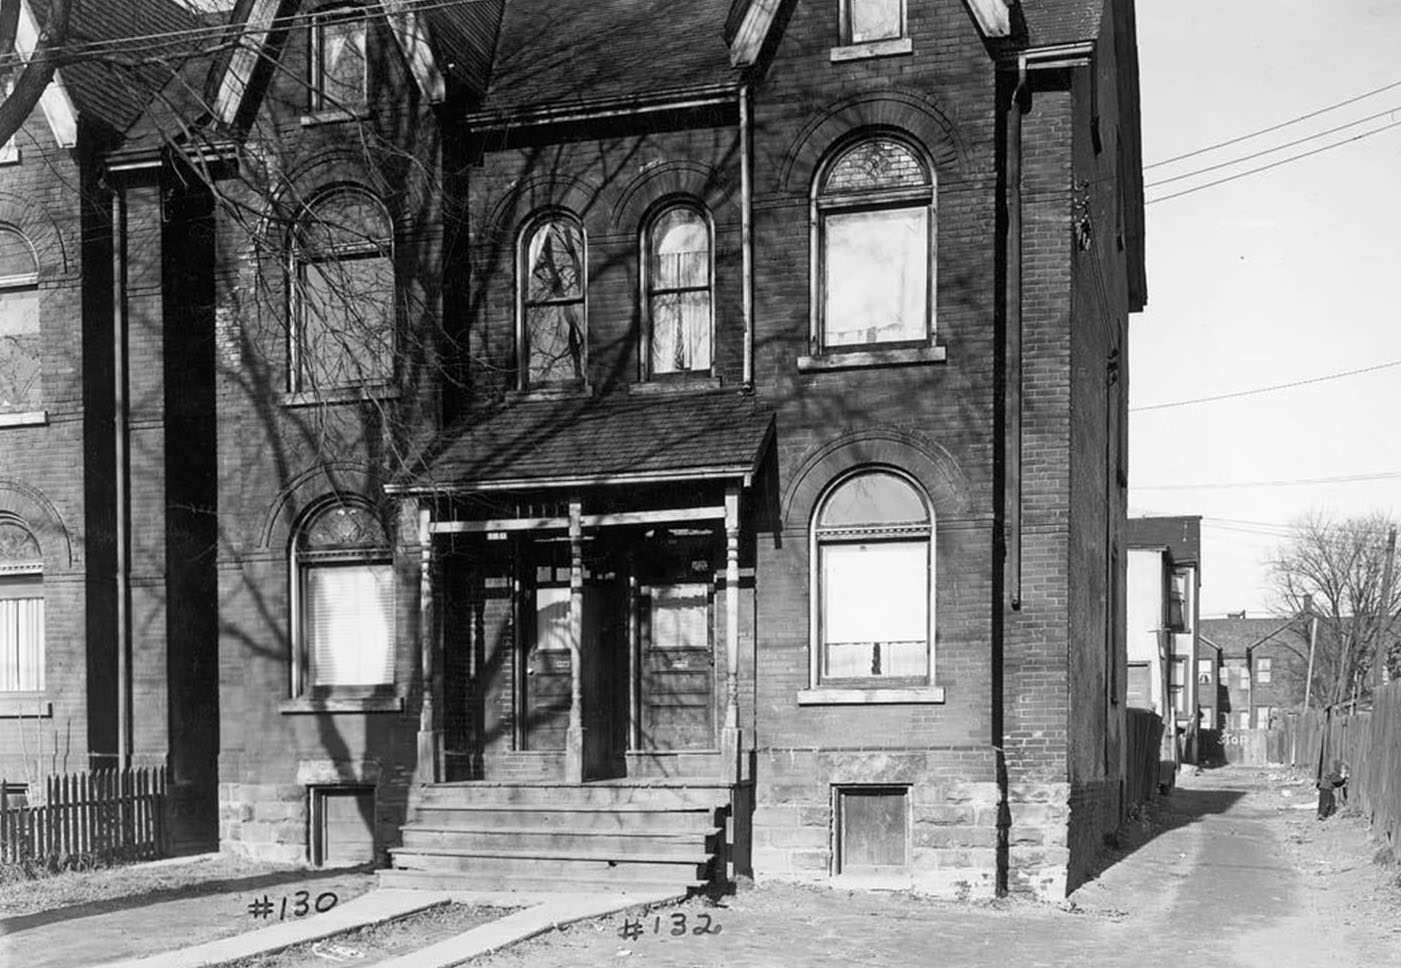 130-32 Oak Street - Nov. 10, 1947